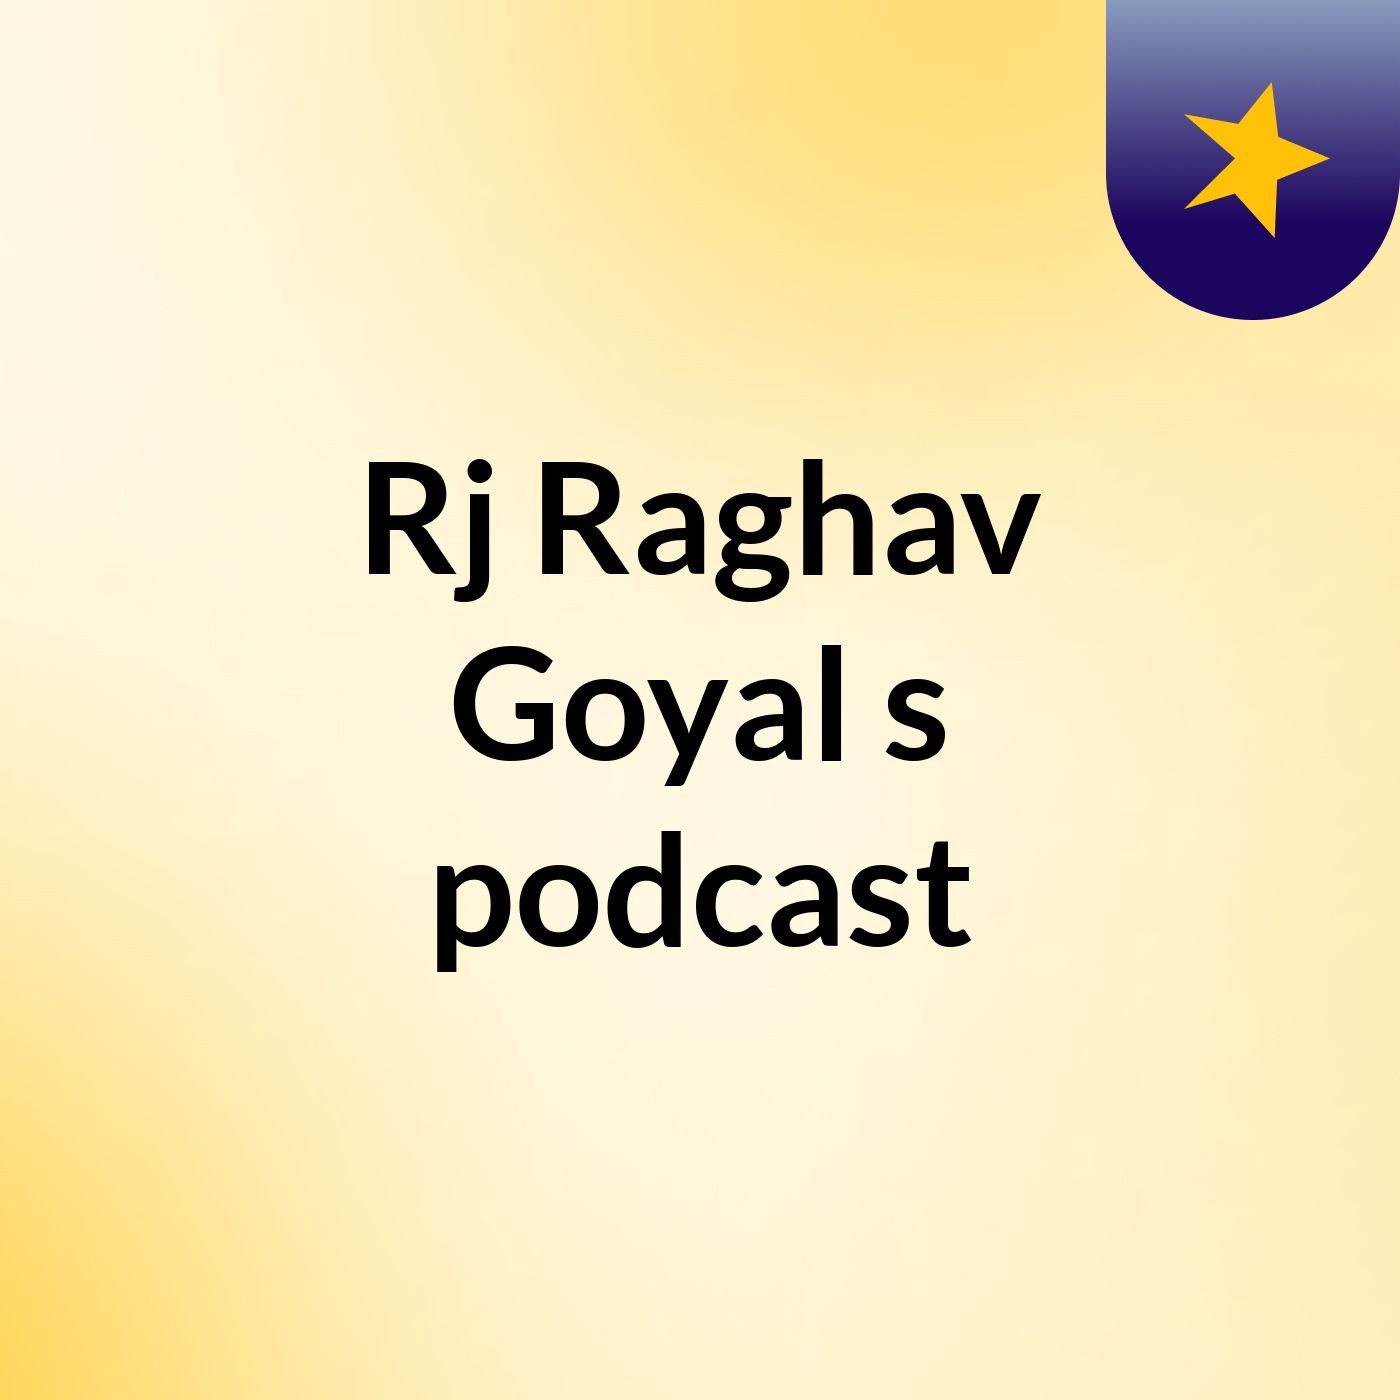 Rj Raghav Goyal's podcast